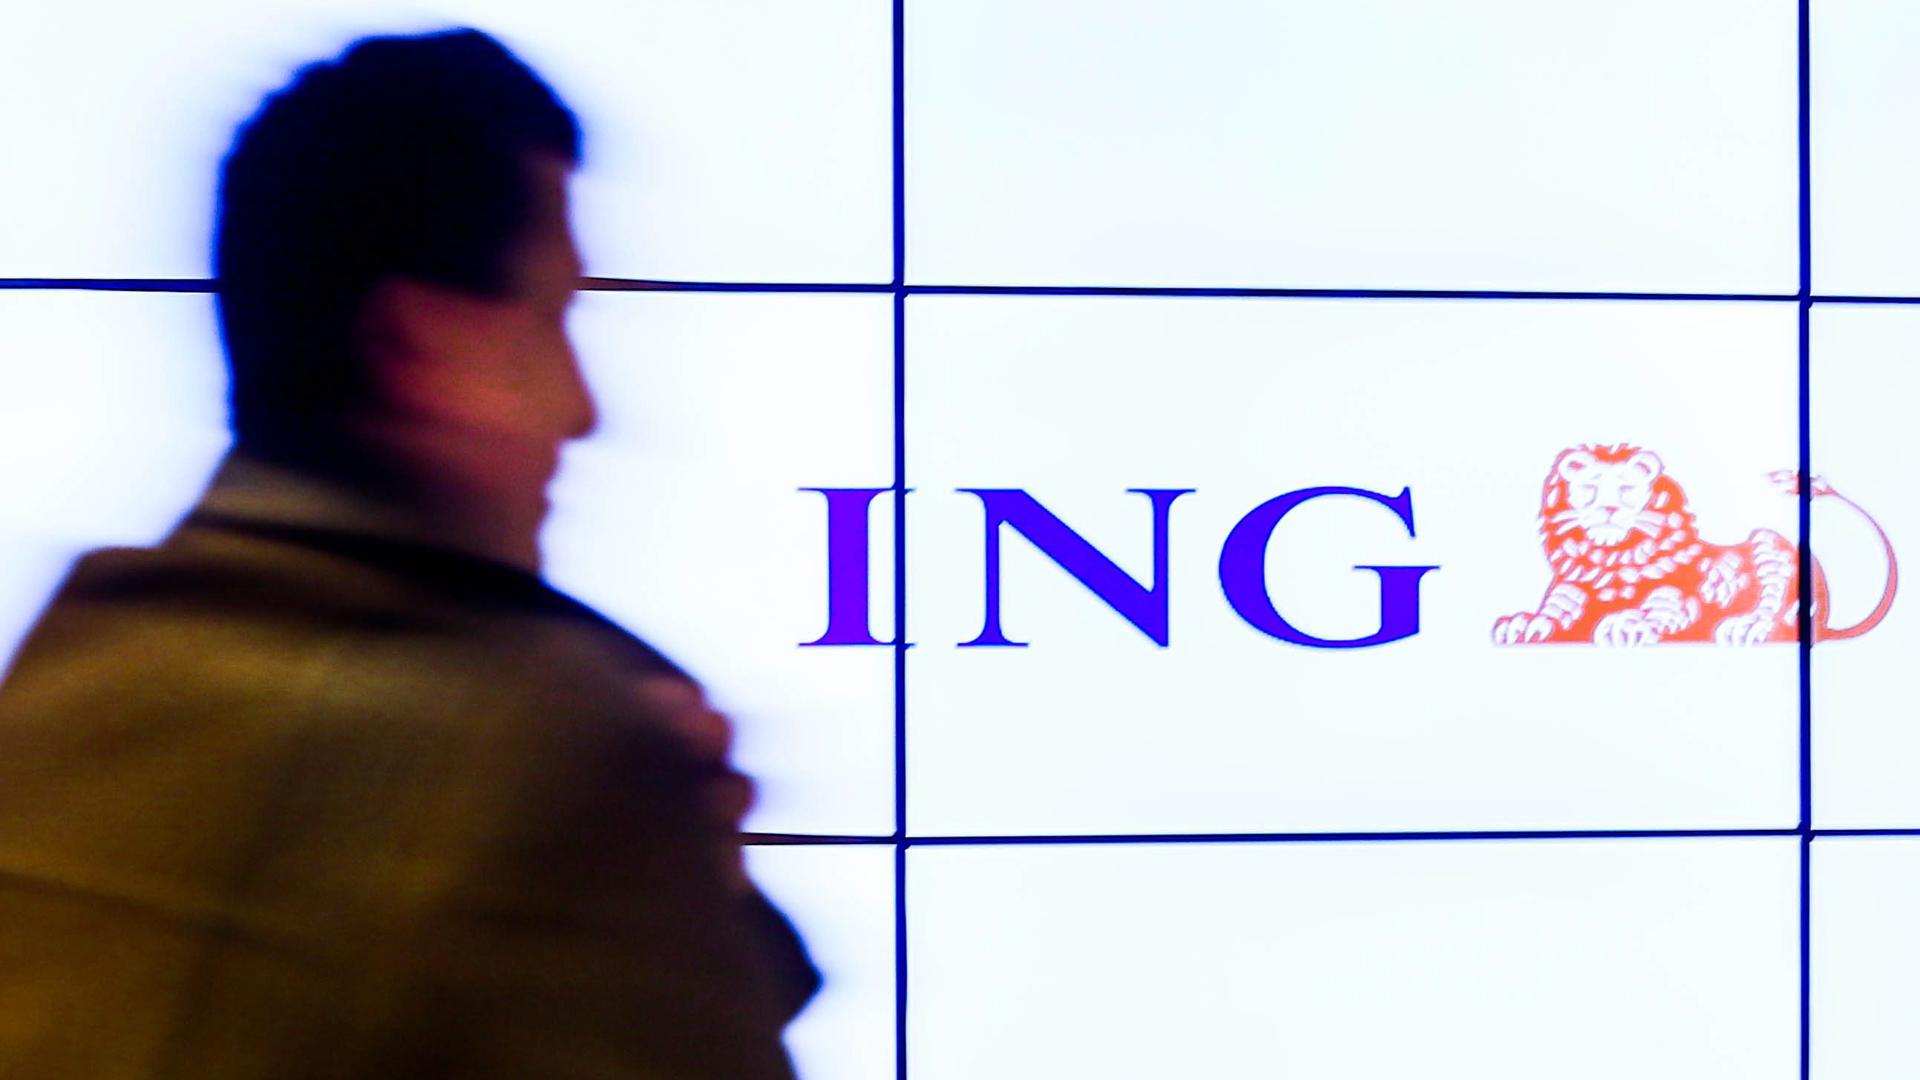 Das Logo der Bank ING ist zu sehen.